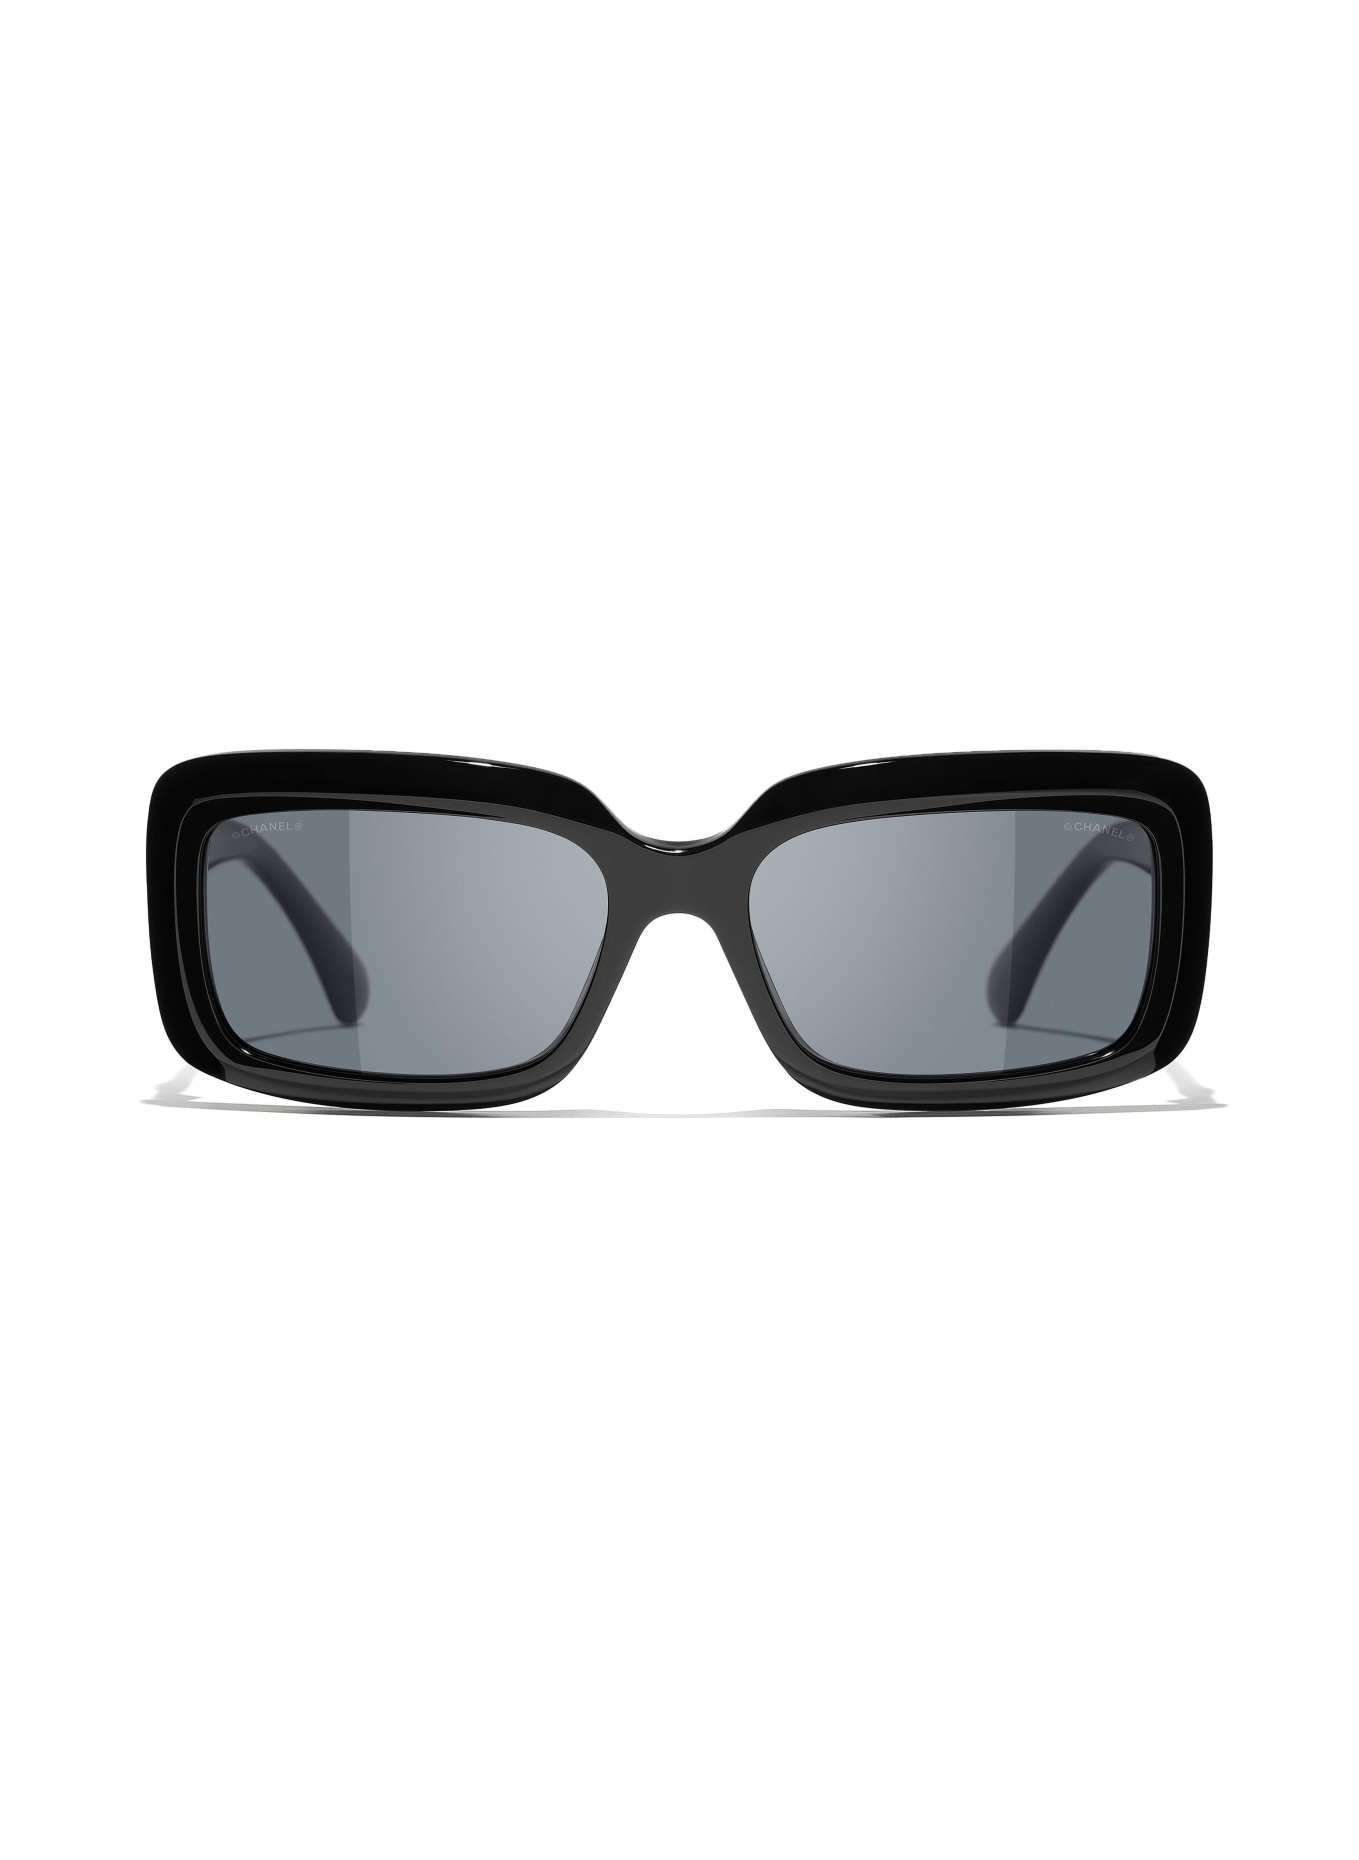 CHANEL Rechteckige Sonnenbrille, Farbe: C501S4 - SCHWARZ/ DUNKELGRAU (Bild 2)